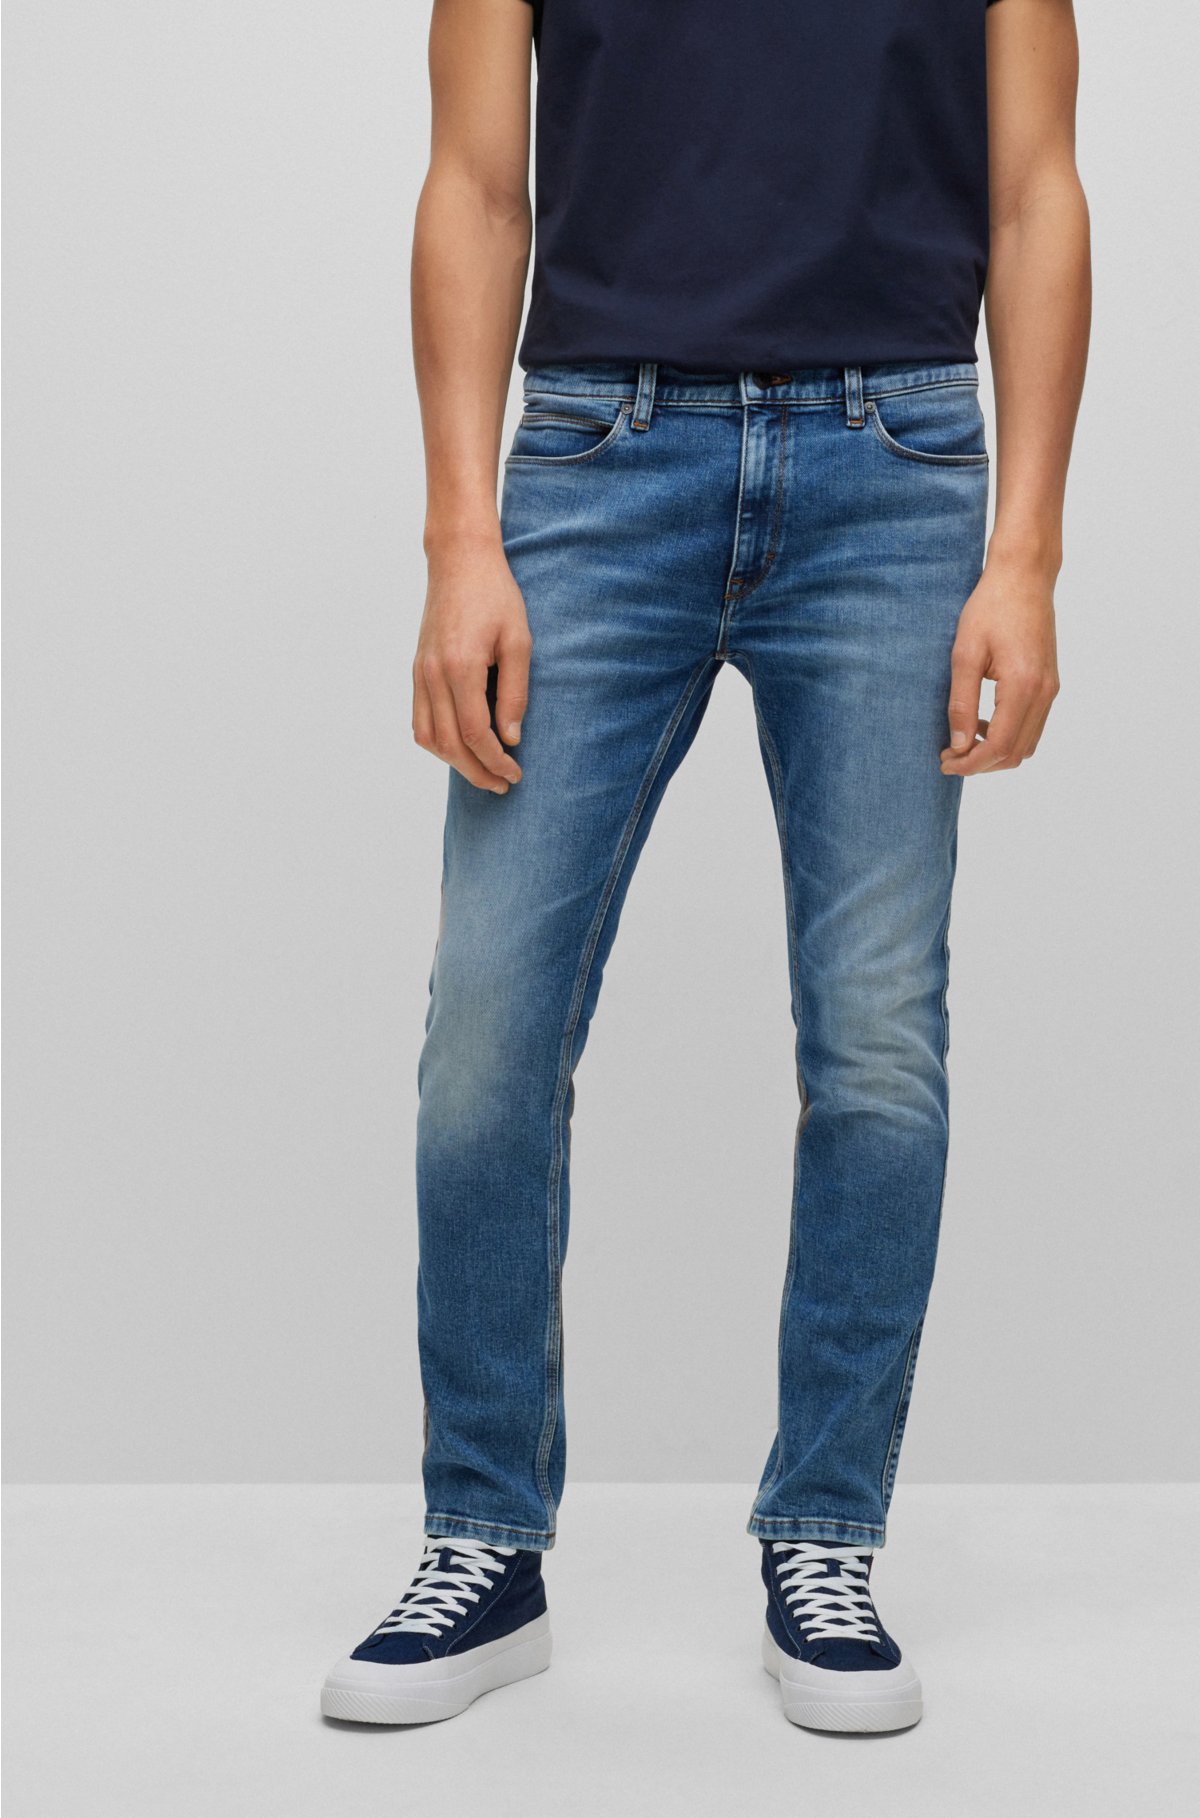 Voorwaarden calcium Welkom HUGO - Extra-slim-fit jeans in super-soft blue denim